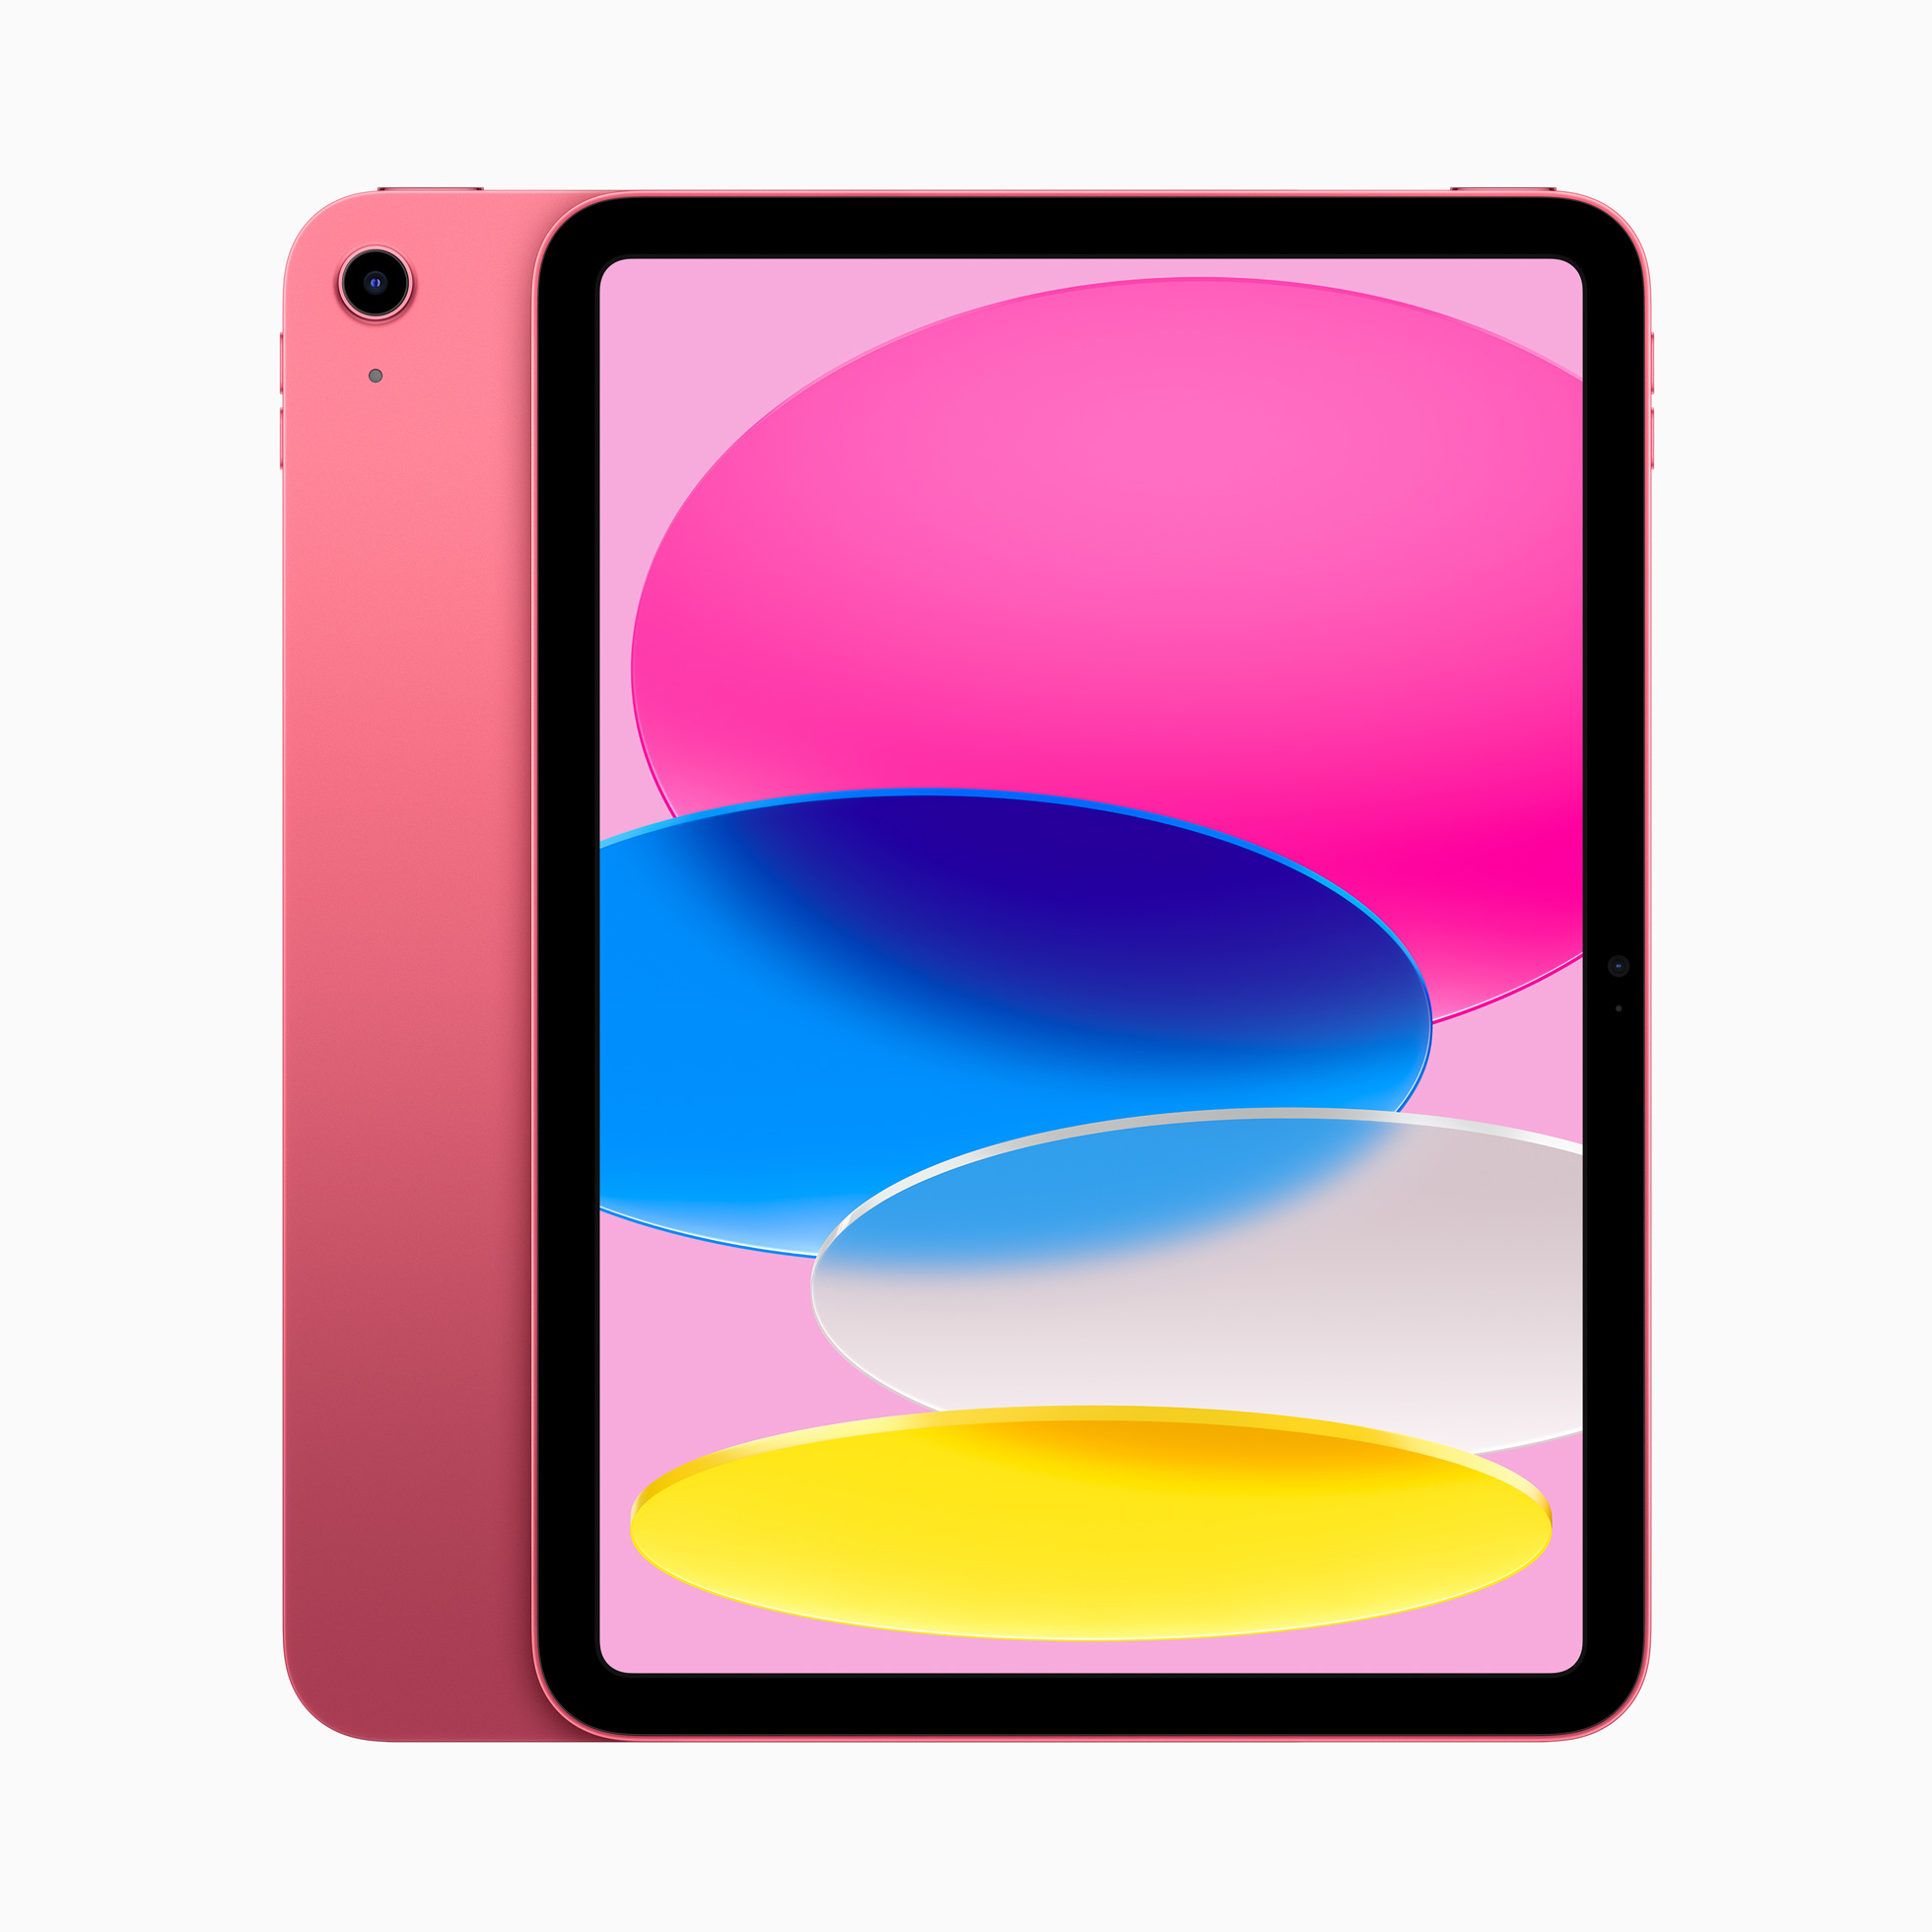 Apple เปิดตัว iPad ที่ออกแบบใหม่หมดใน 4 สีสันสดใส